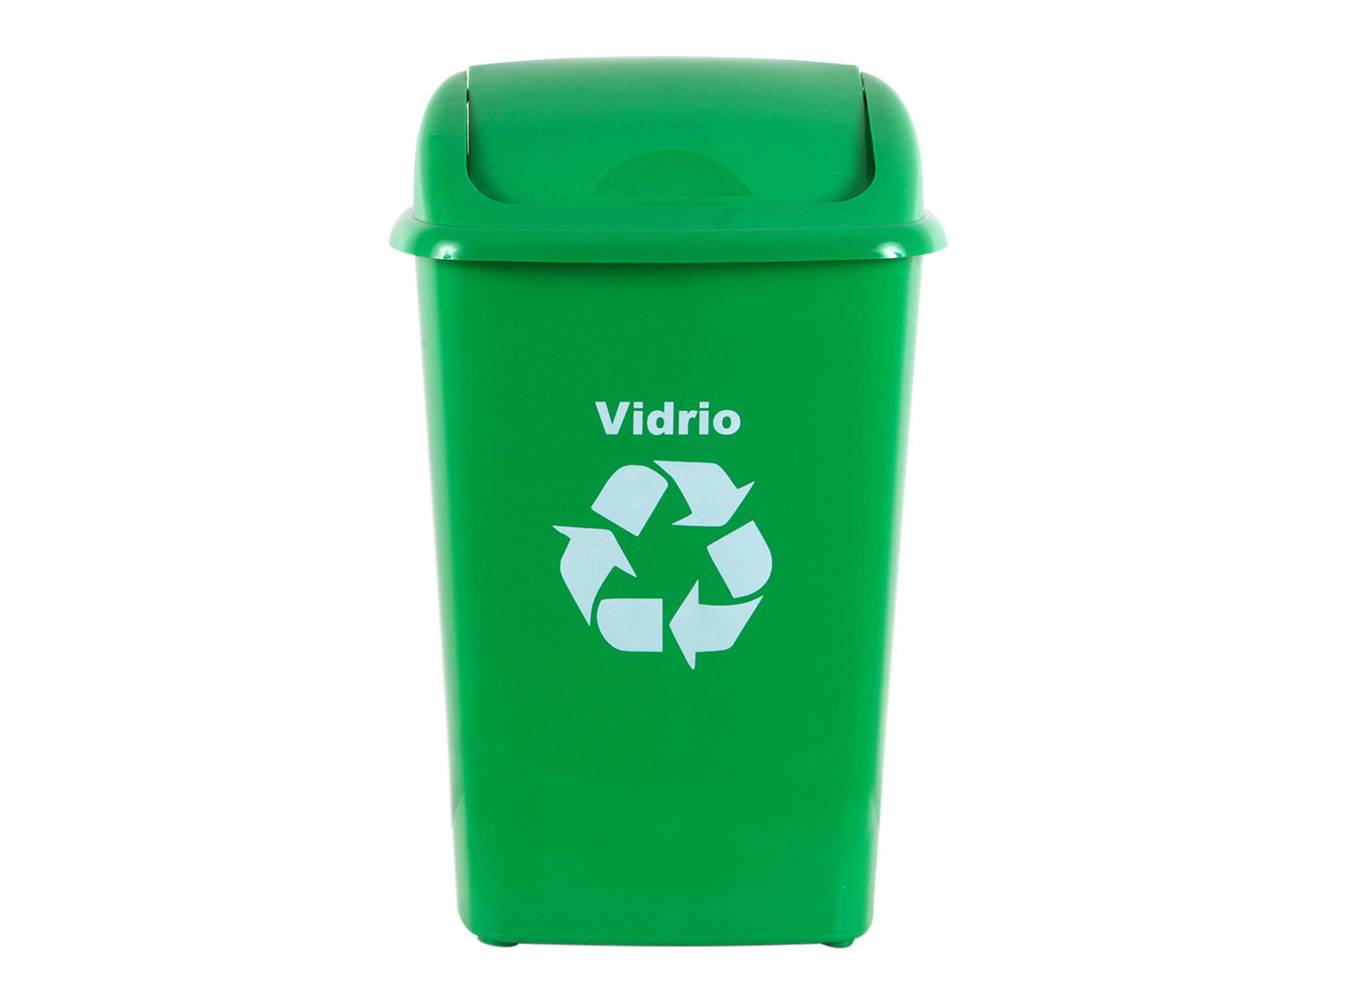 Innovaplast basurero 30 litros reciclaje vidrio verde (1 basurero, 1 tapa)